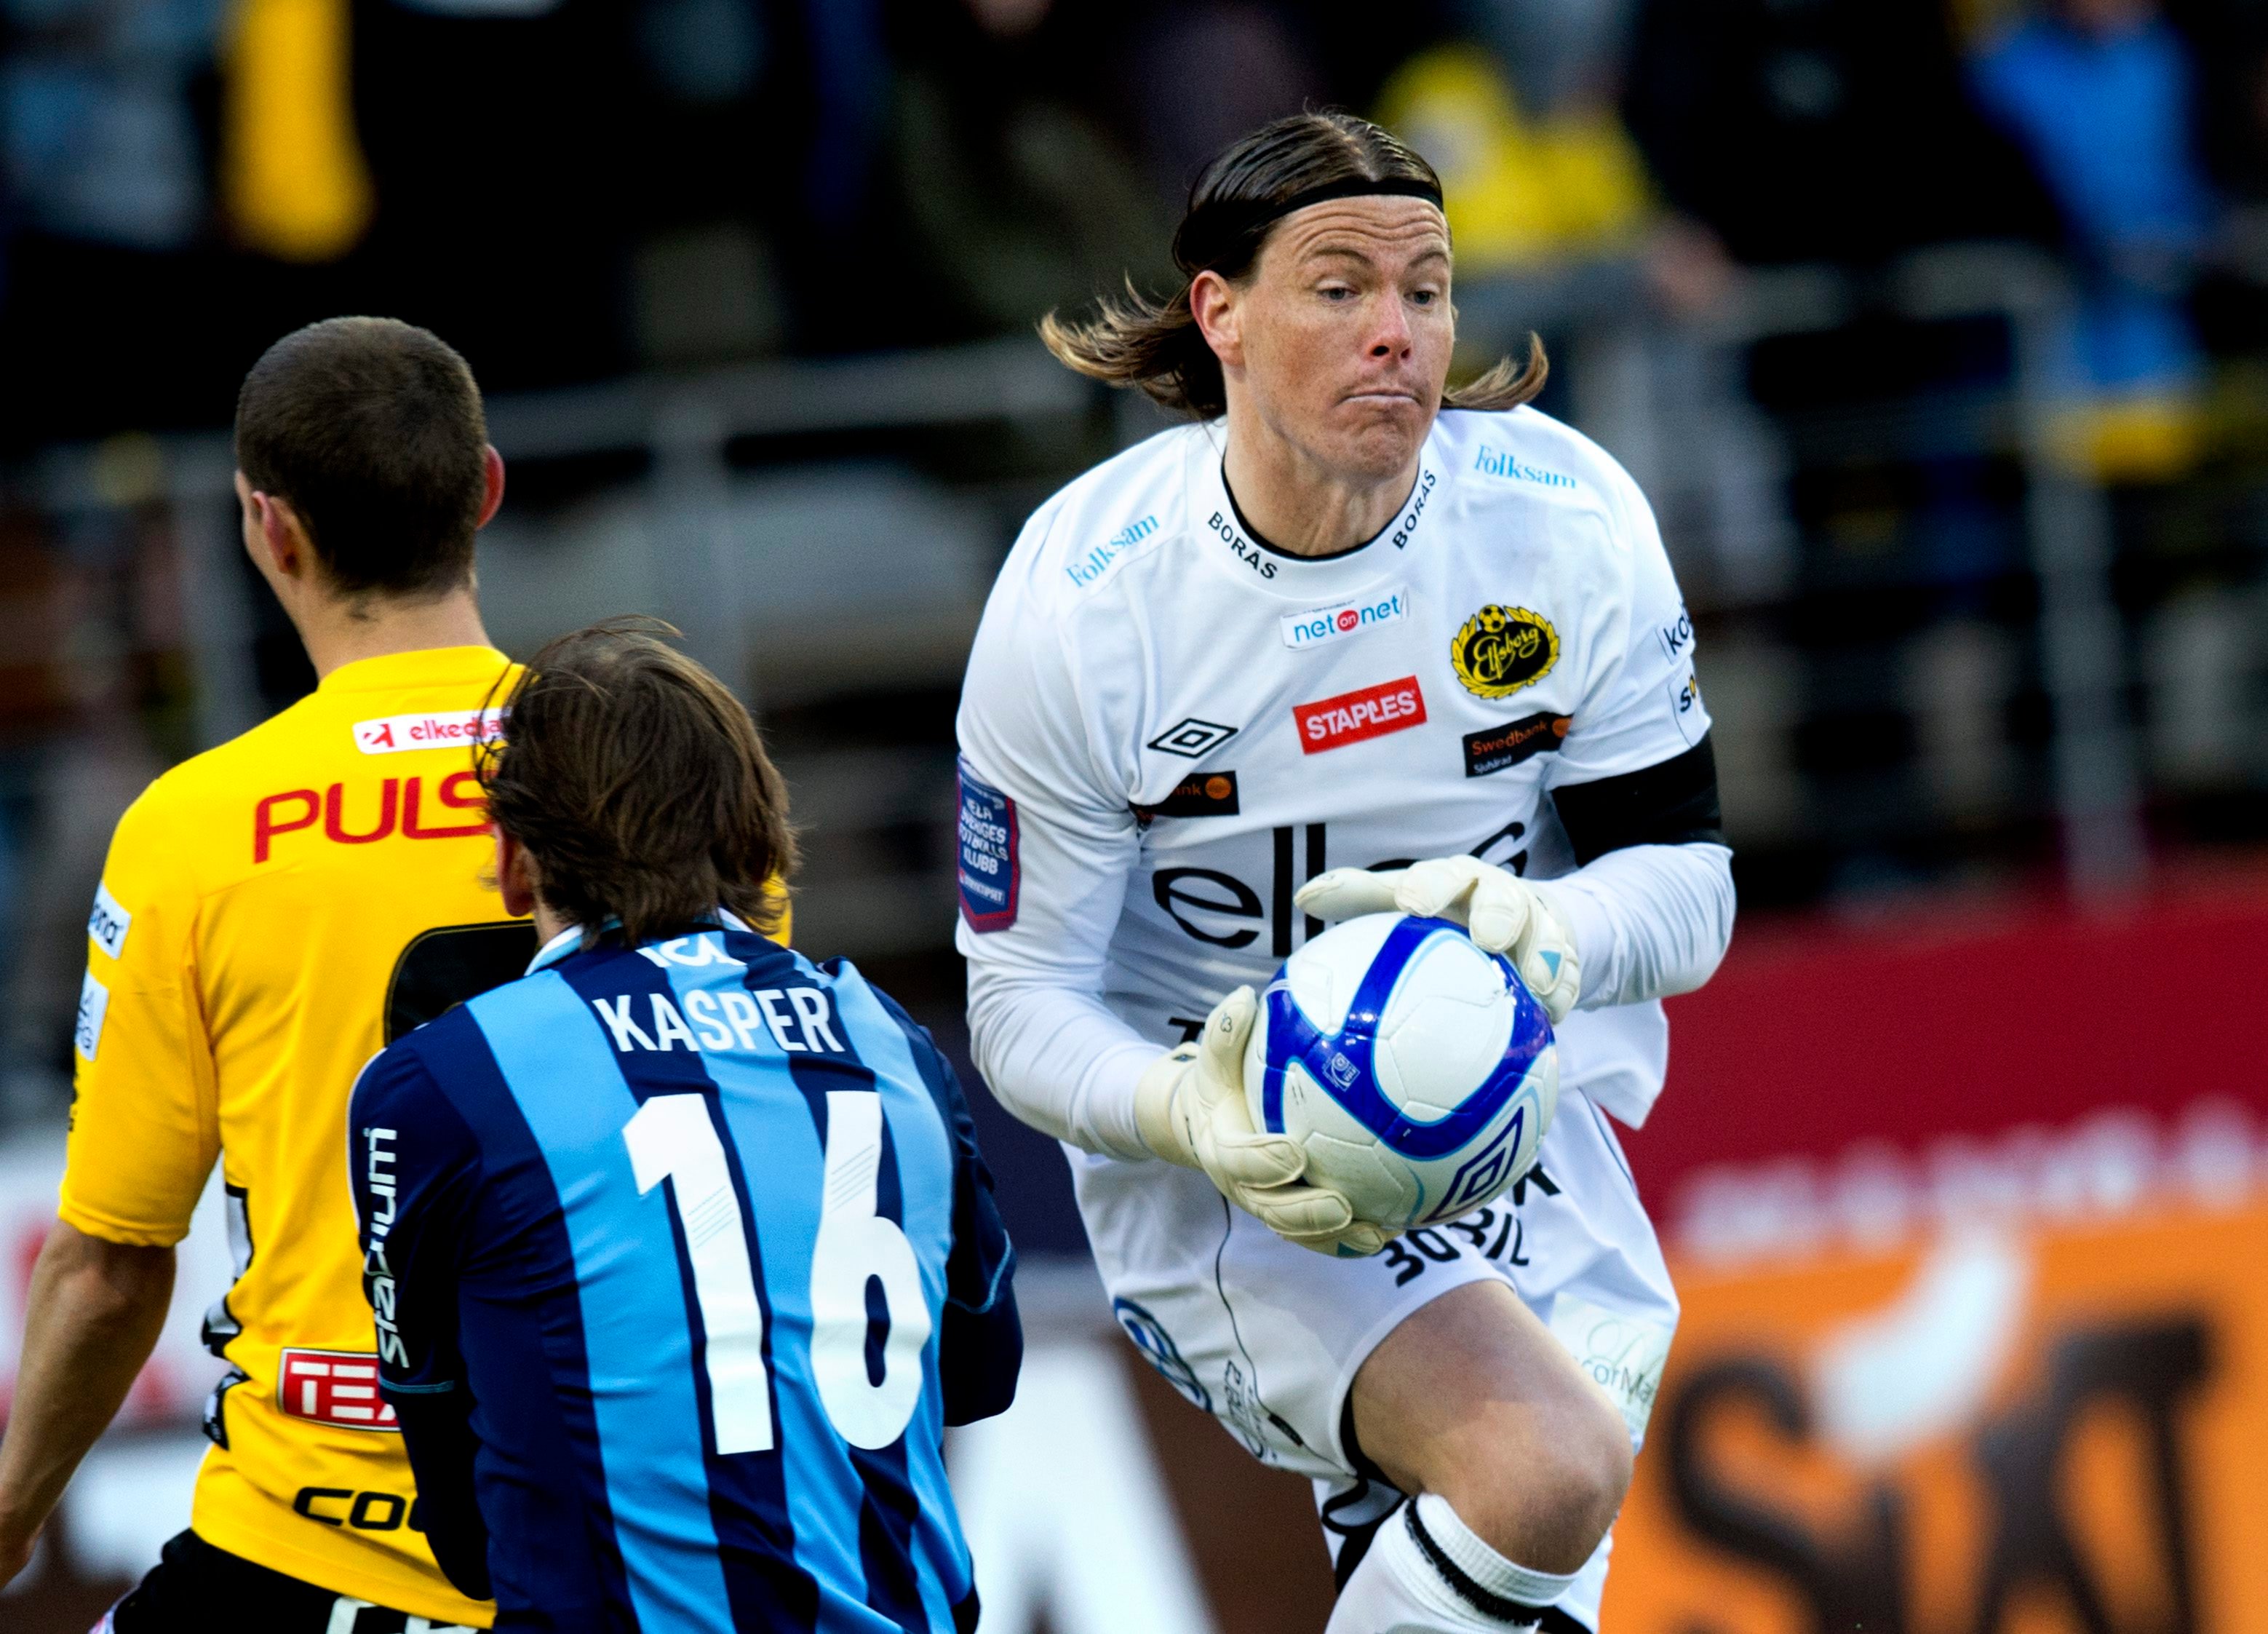 Höje vill stanna i allsvenskan – kanske blir Djurgården nästa klubb.